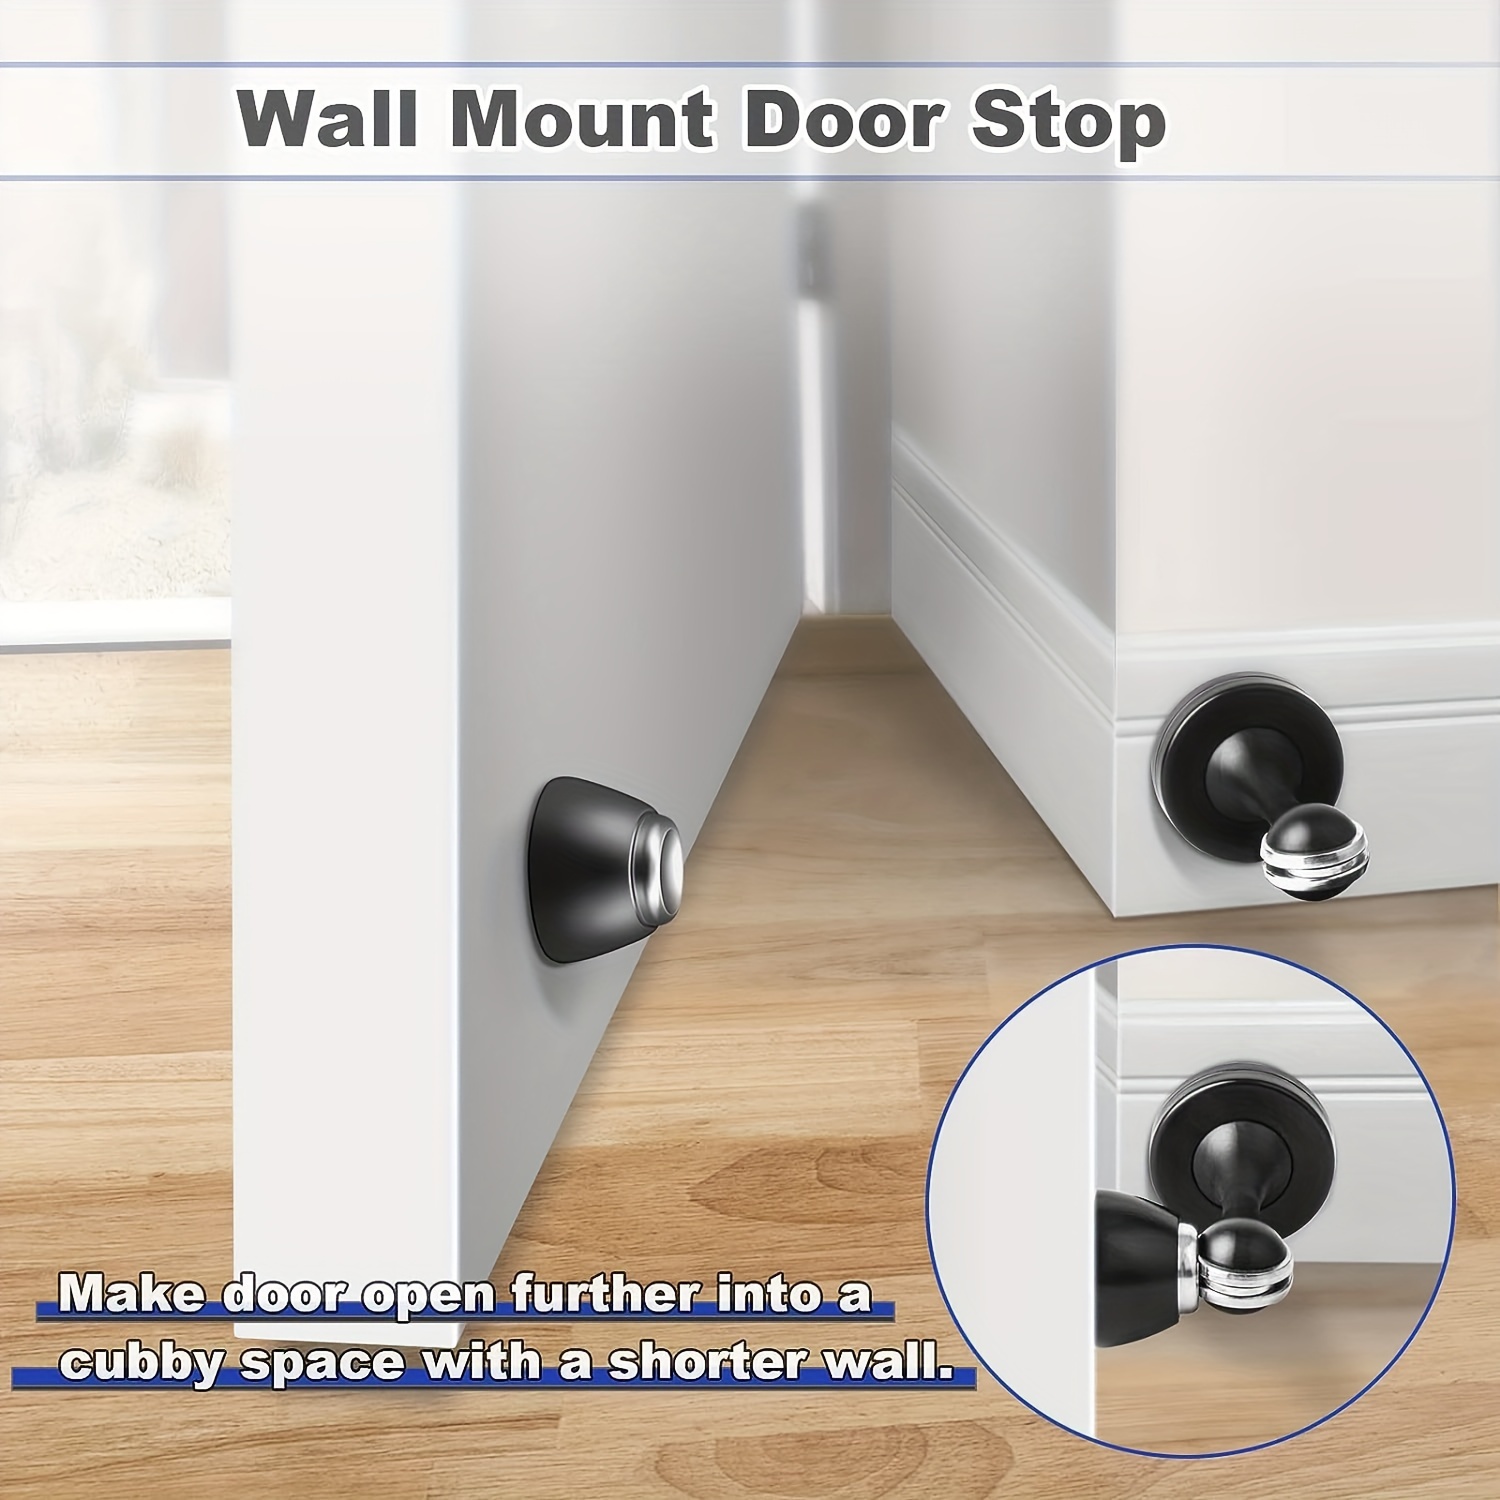  Topes de puerta para pared y suelo (soporte magnético